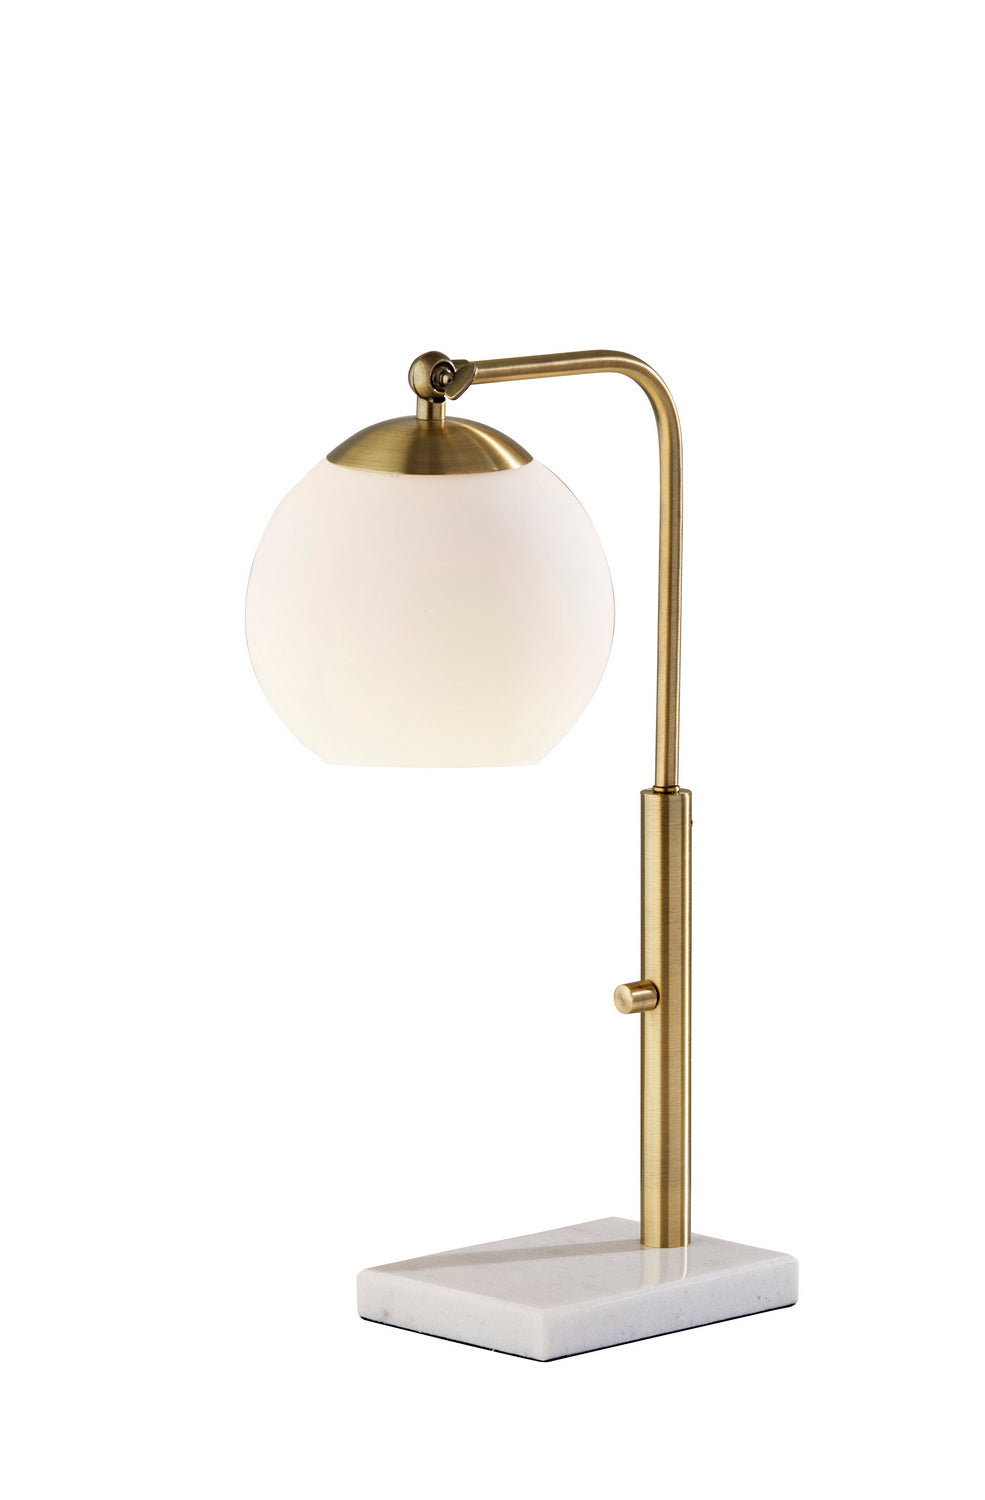 Adesso Home 4314-21  Remi Lamp Antique Brass